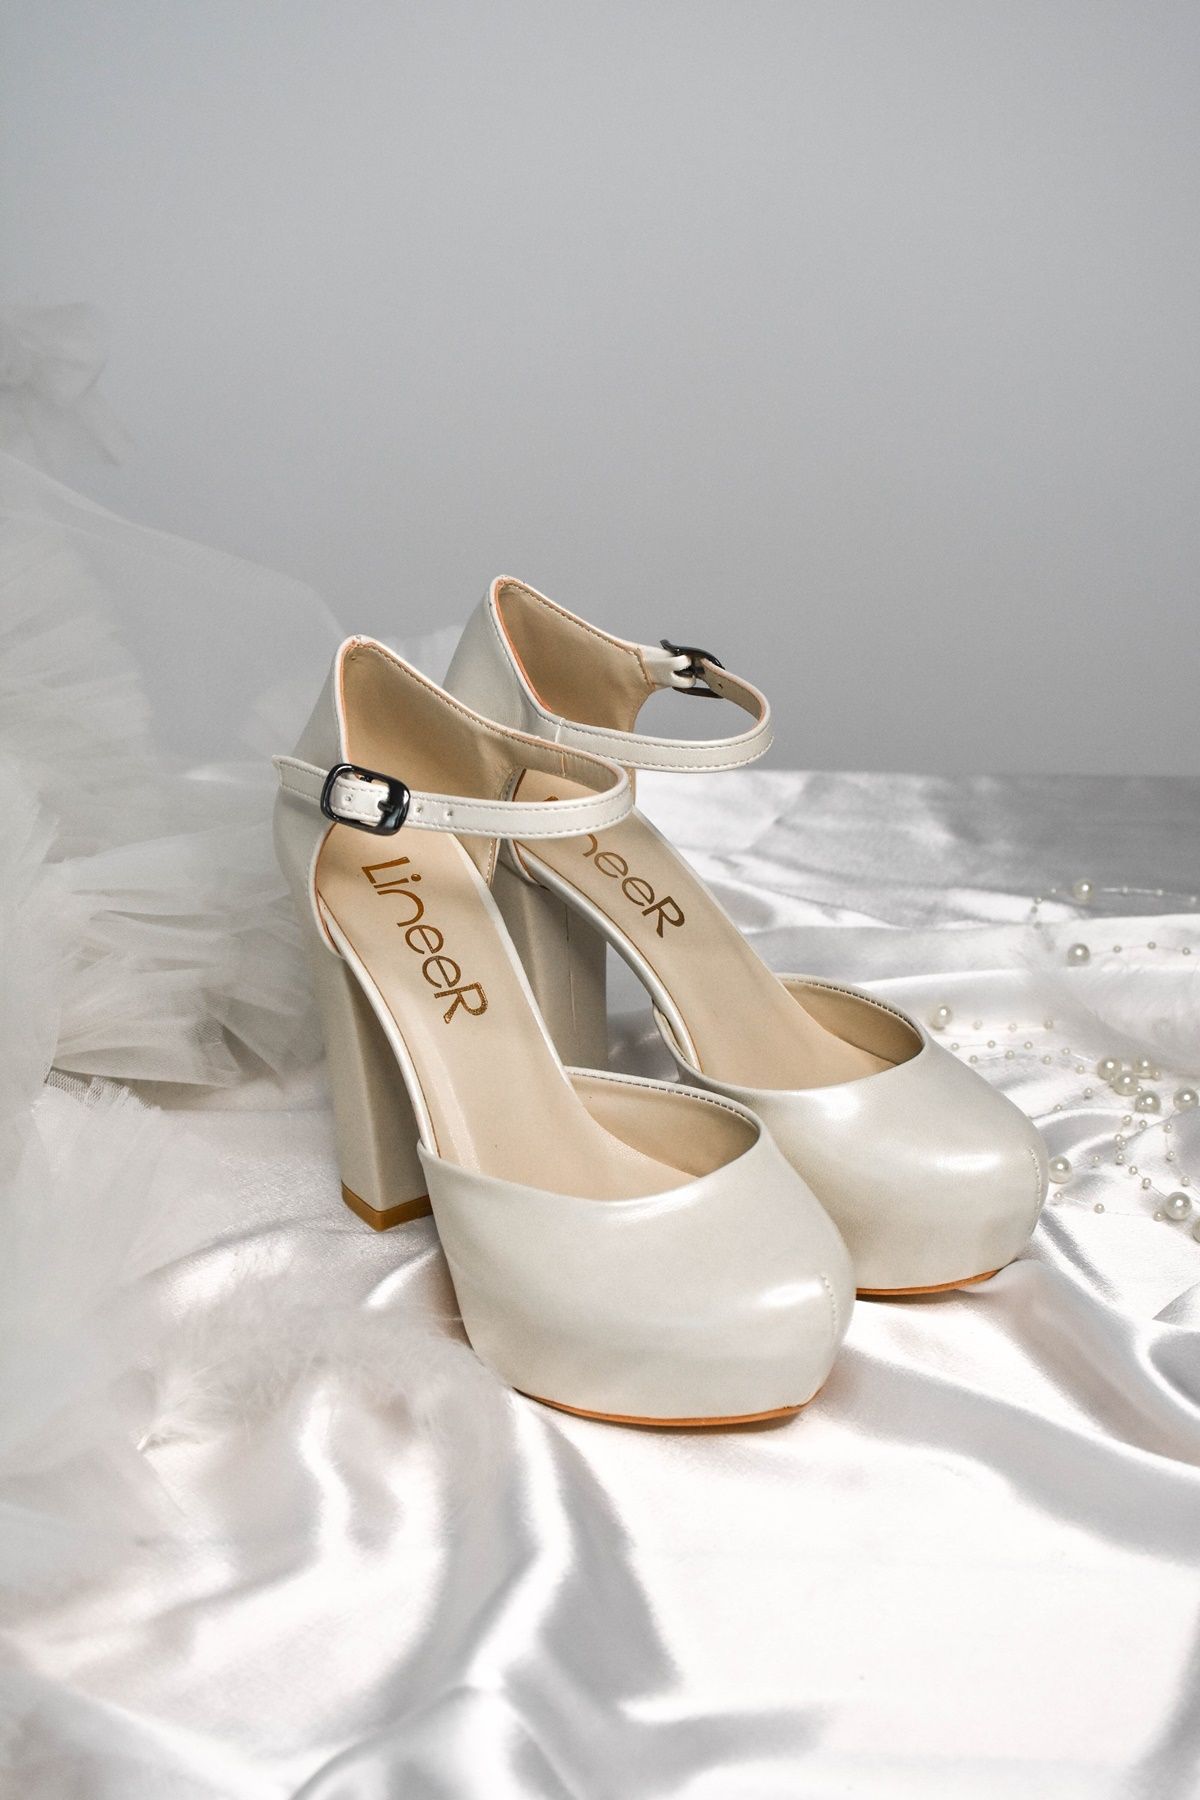 LİNEER Kadın Sedef Kırık Beyaz Renk 12 Cm Platform Topuklu Abiye Gelin Ayakkabısı